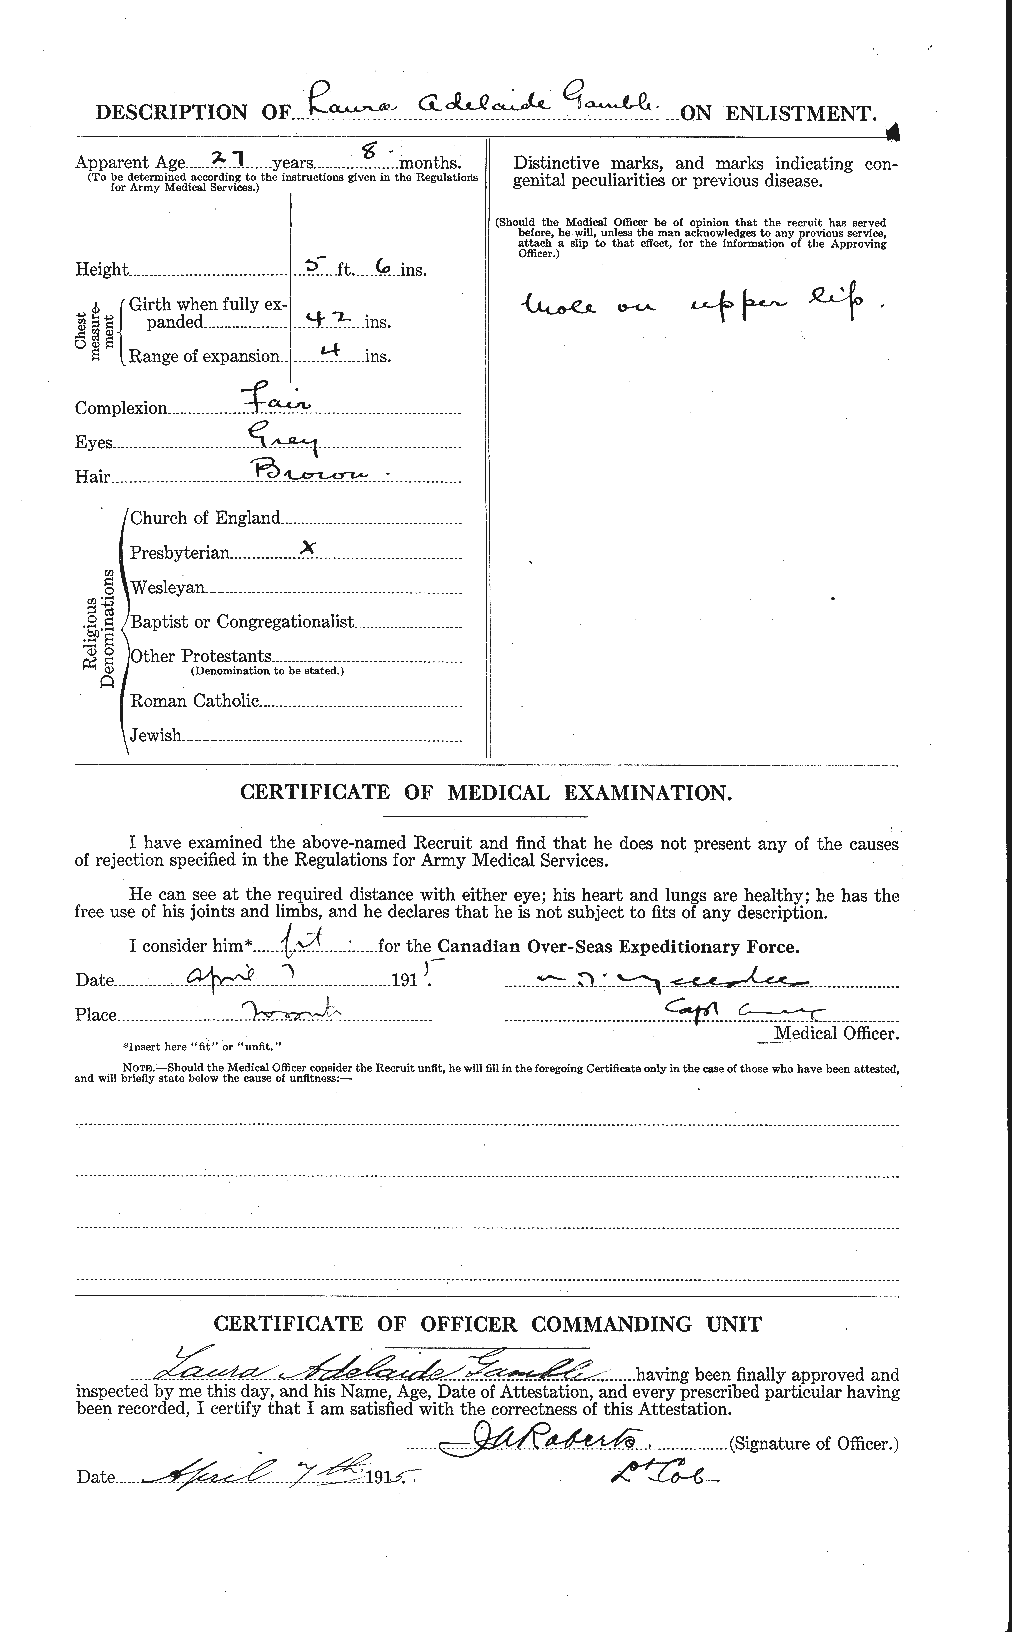 Dossiers du Personnel de la Première Guerre mondiale - CEC 238861b